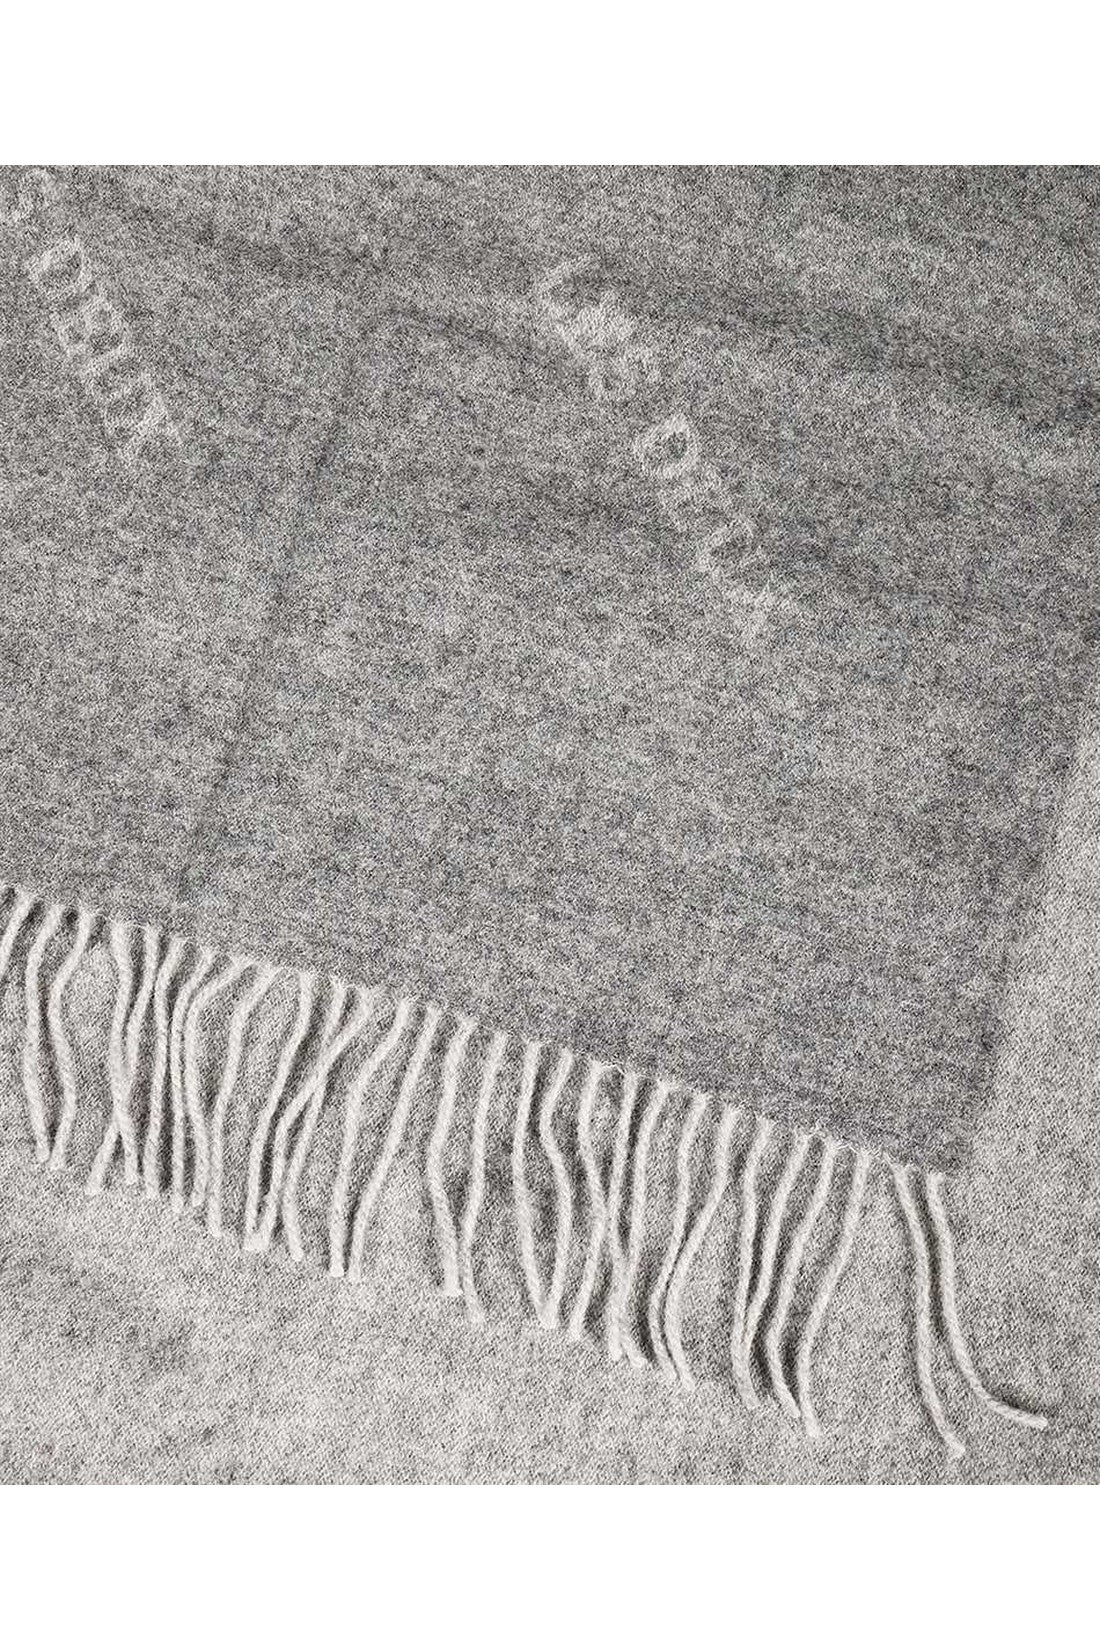 Wool scarf with fringes-Les Deux-OUTLET-SALE-TU-ARCHIVIST